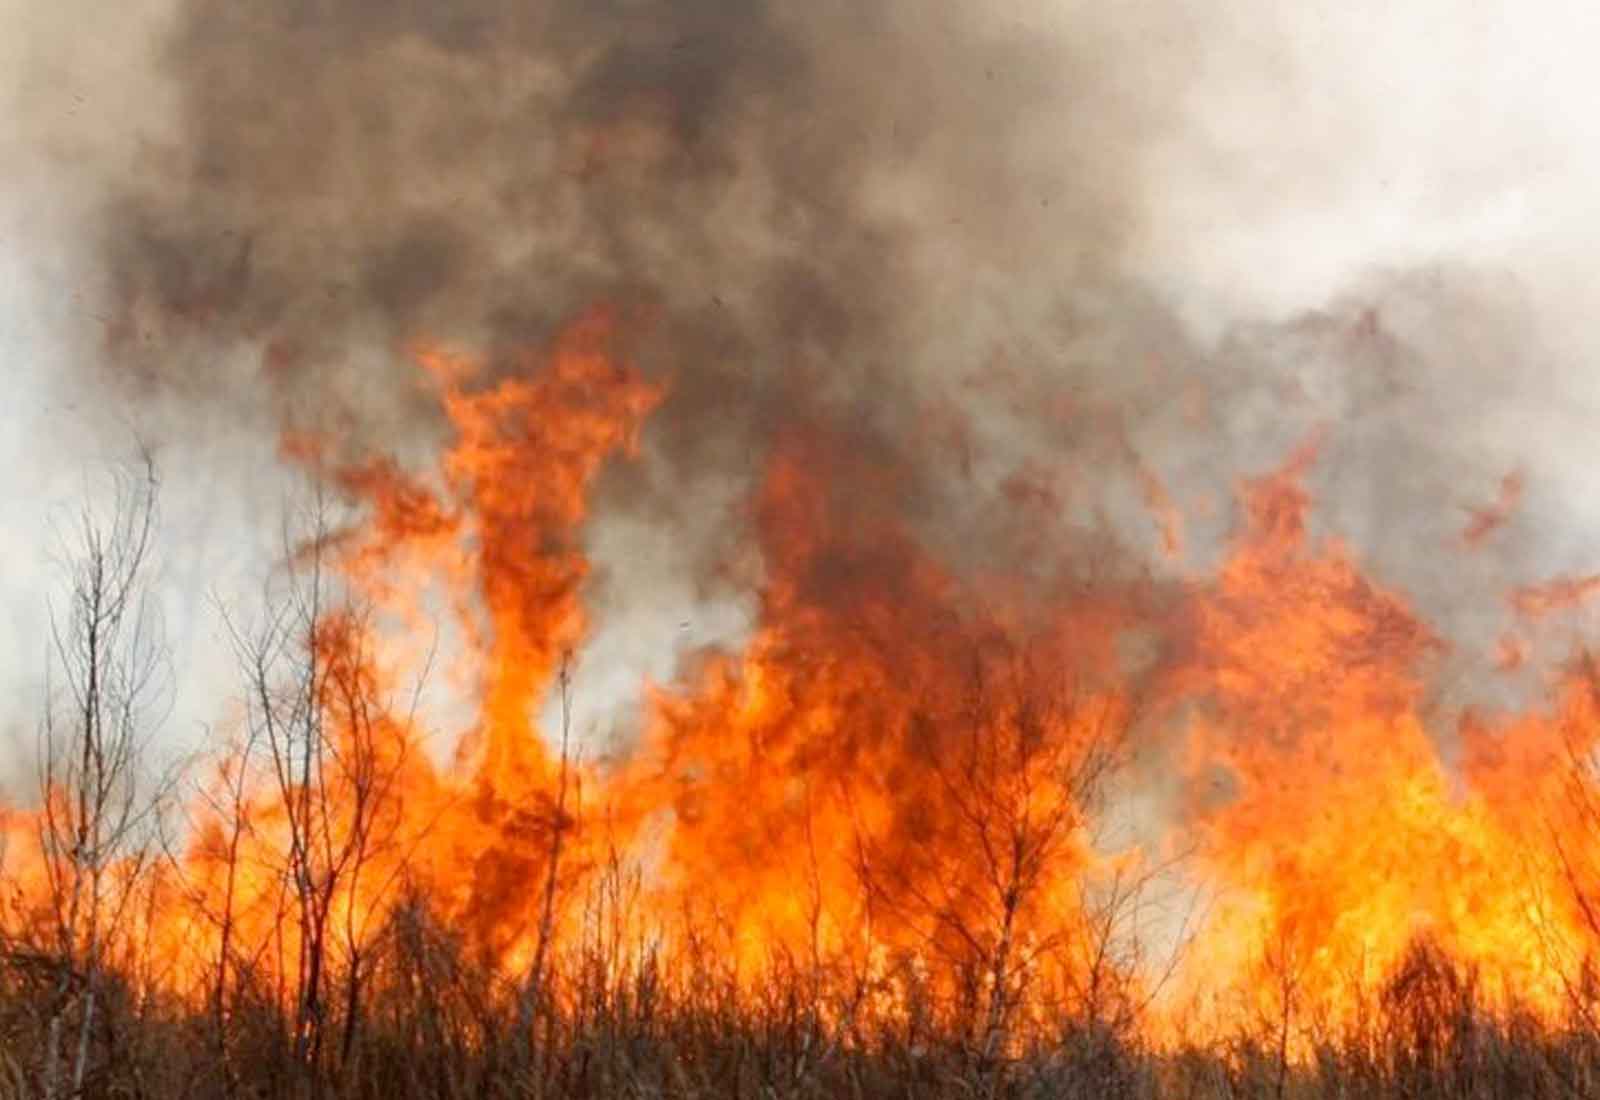 Inhaler demand spiked during 2019-20 bushfires report